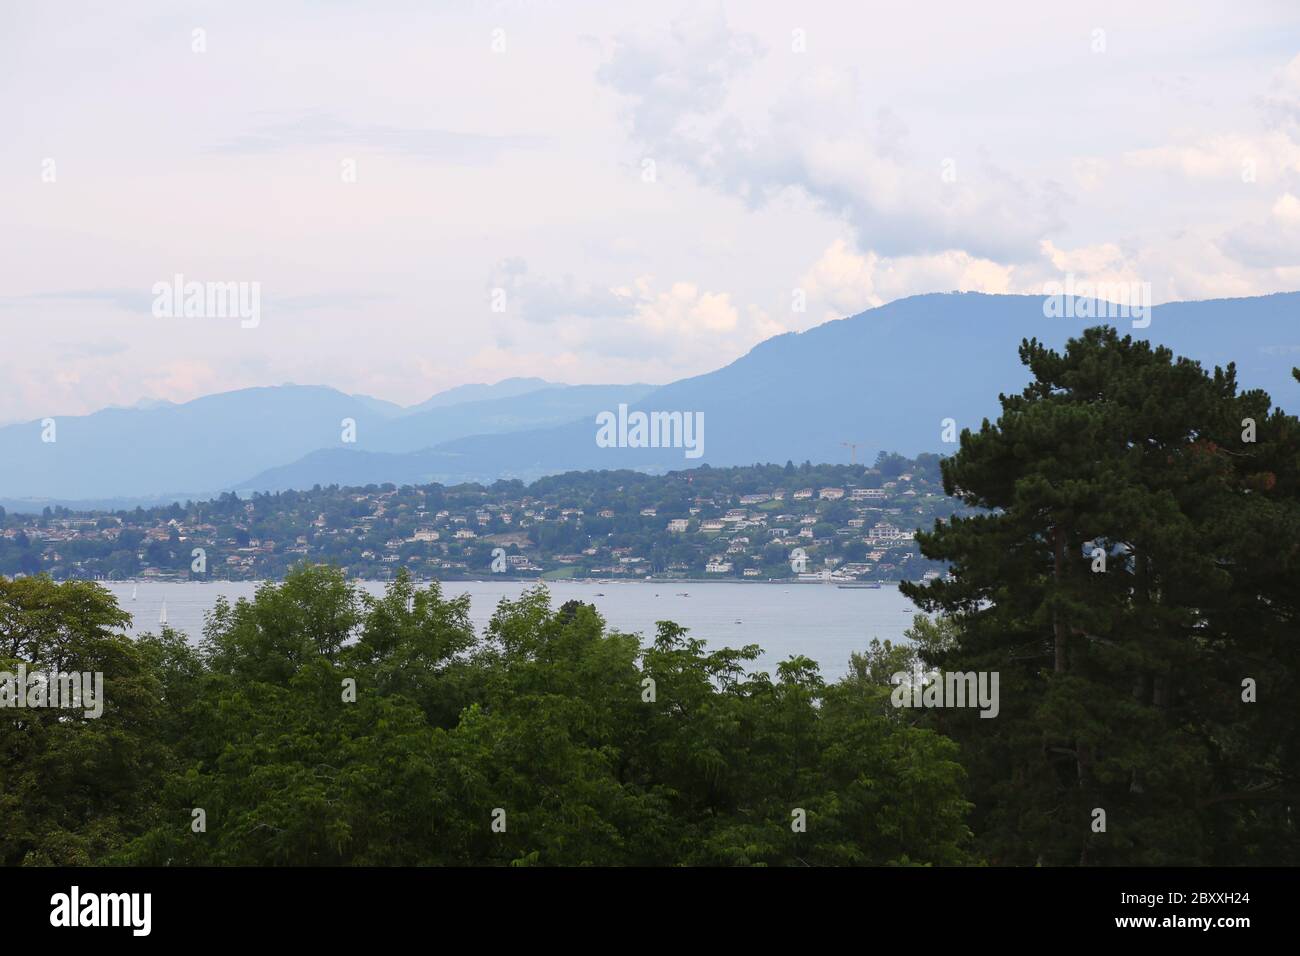 Geneva lake in Switzerland Stock Photo